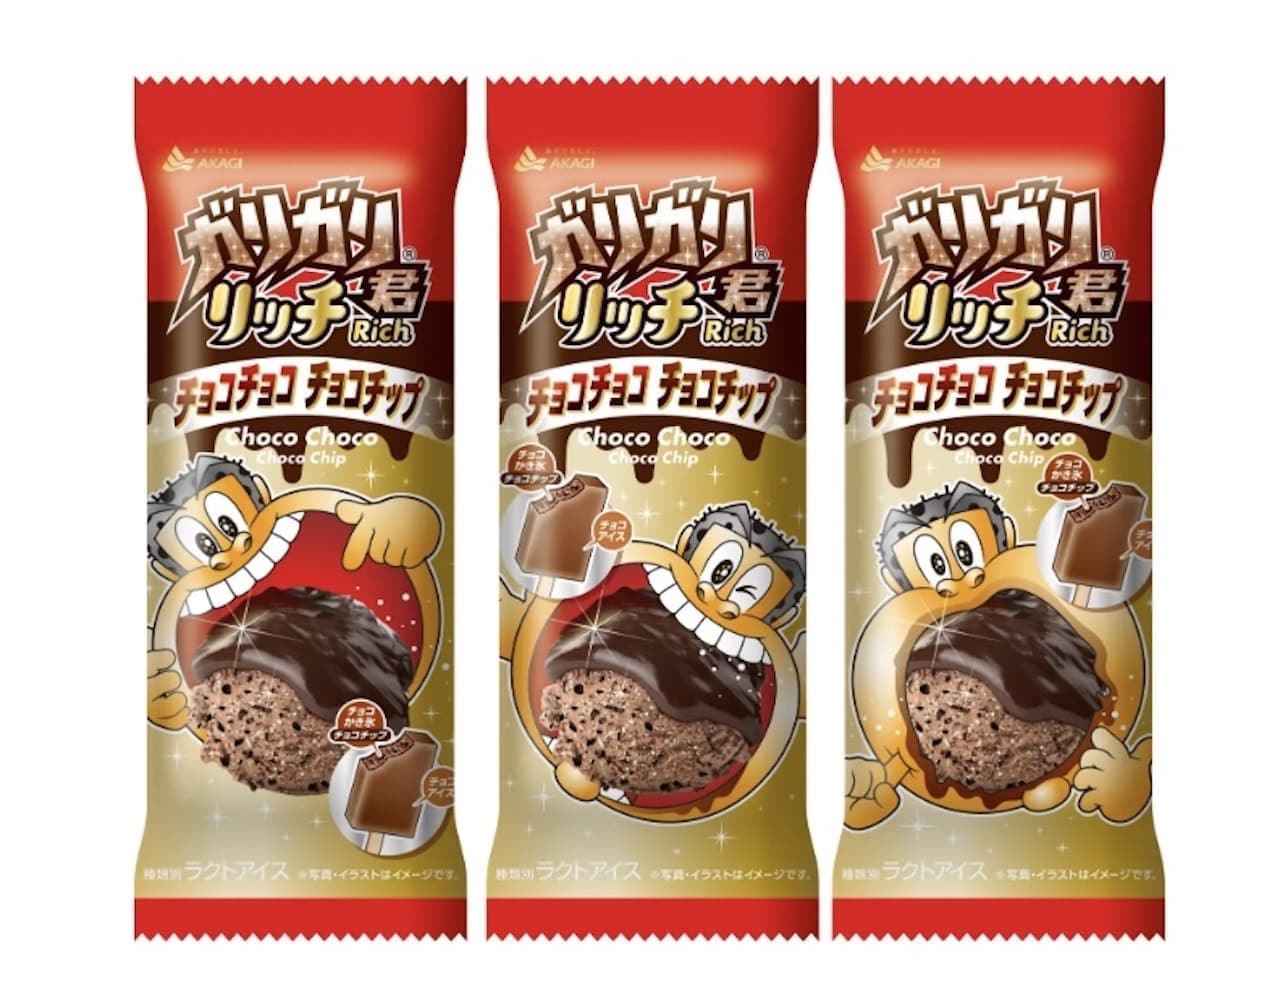 Garigari-kun Rich Chocolate Chocolate Chocolate Chip" from Akagi Nyugyo